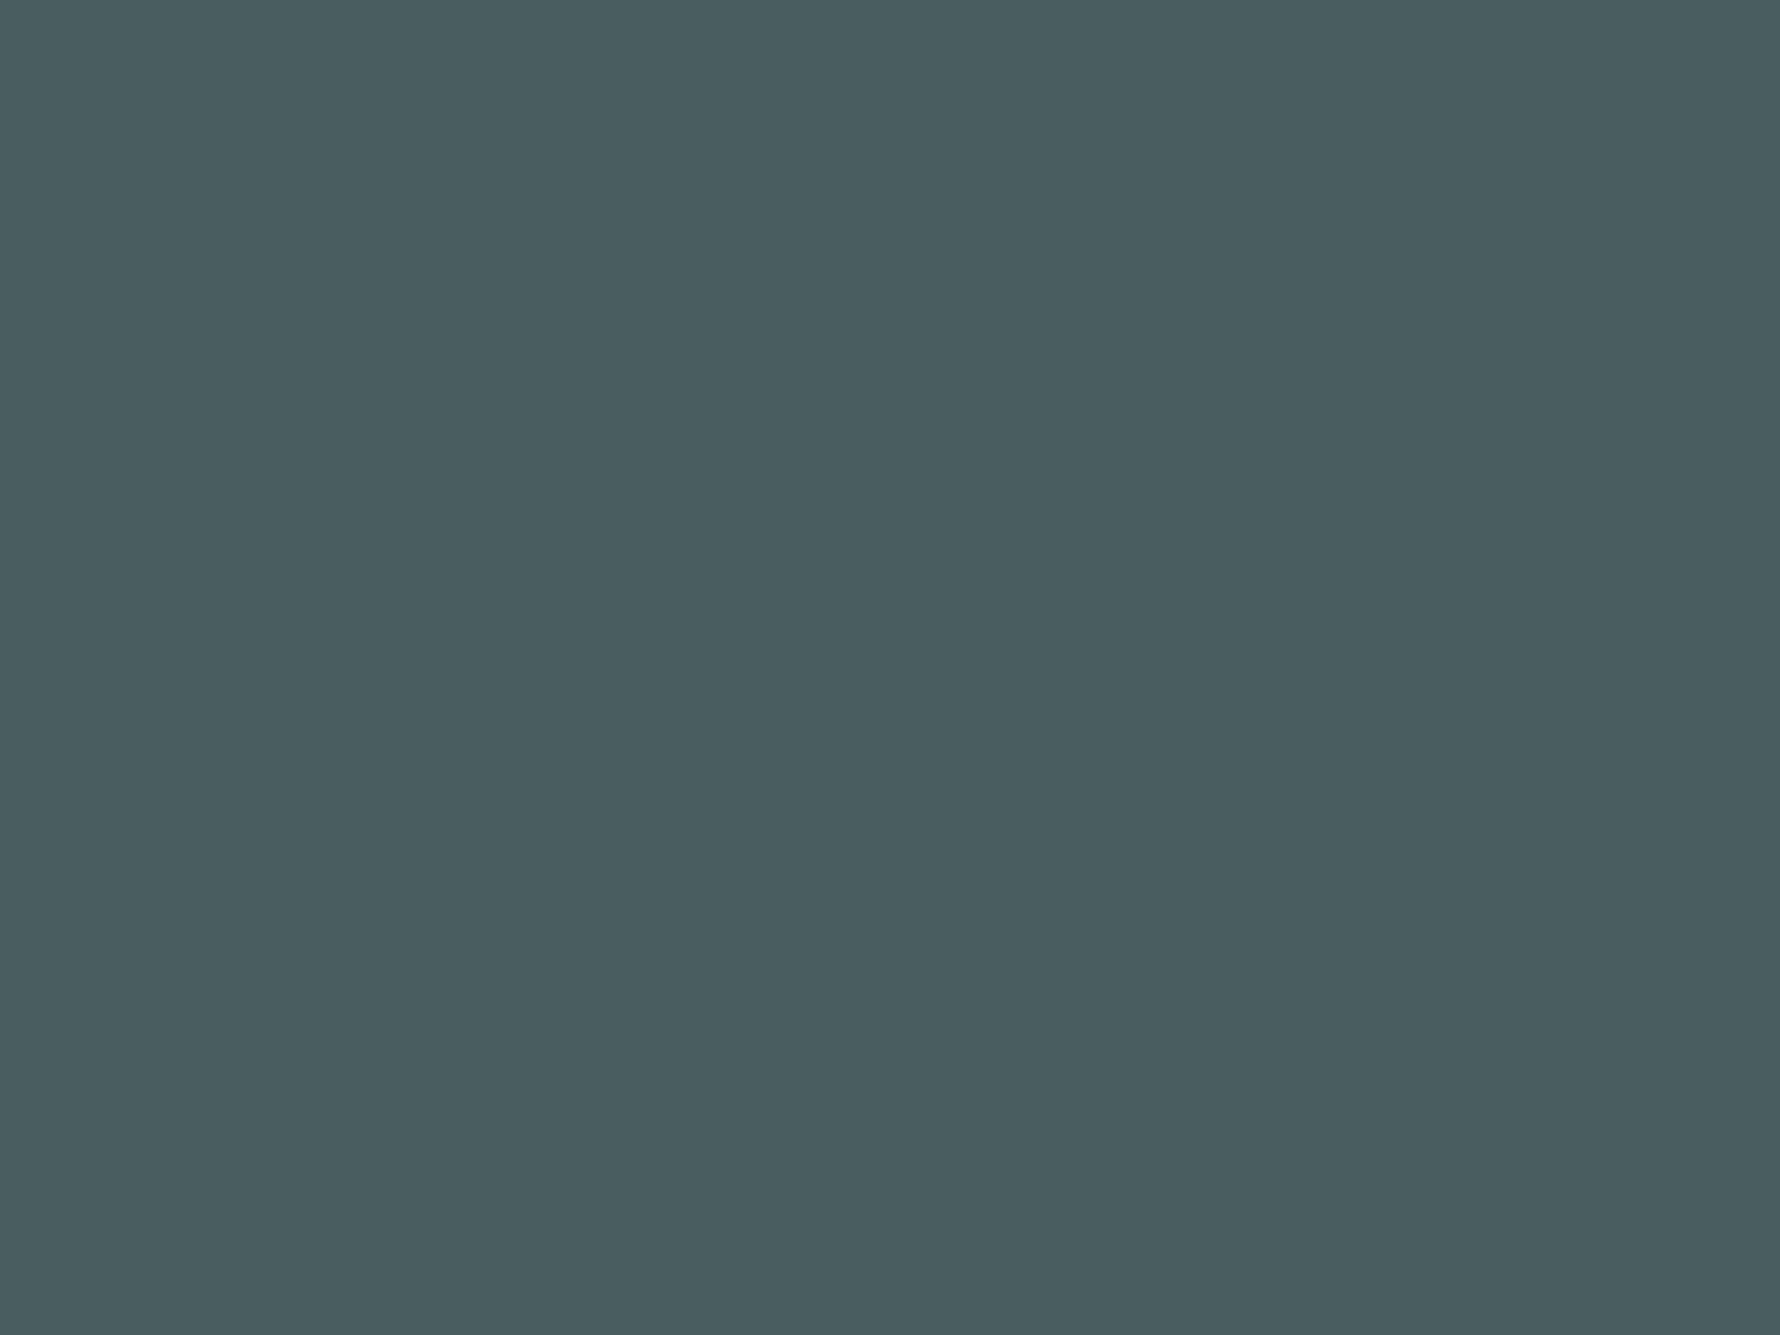 Константин Трутовский. Колядки в Малороссии (фрагмент). Не позднее 1864. Государственный Русский музей, Санкт-Петербург